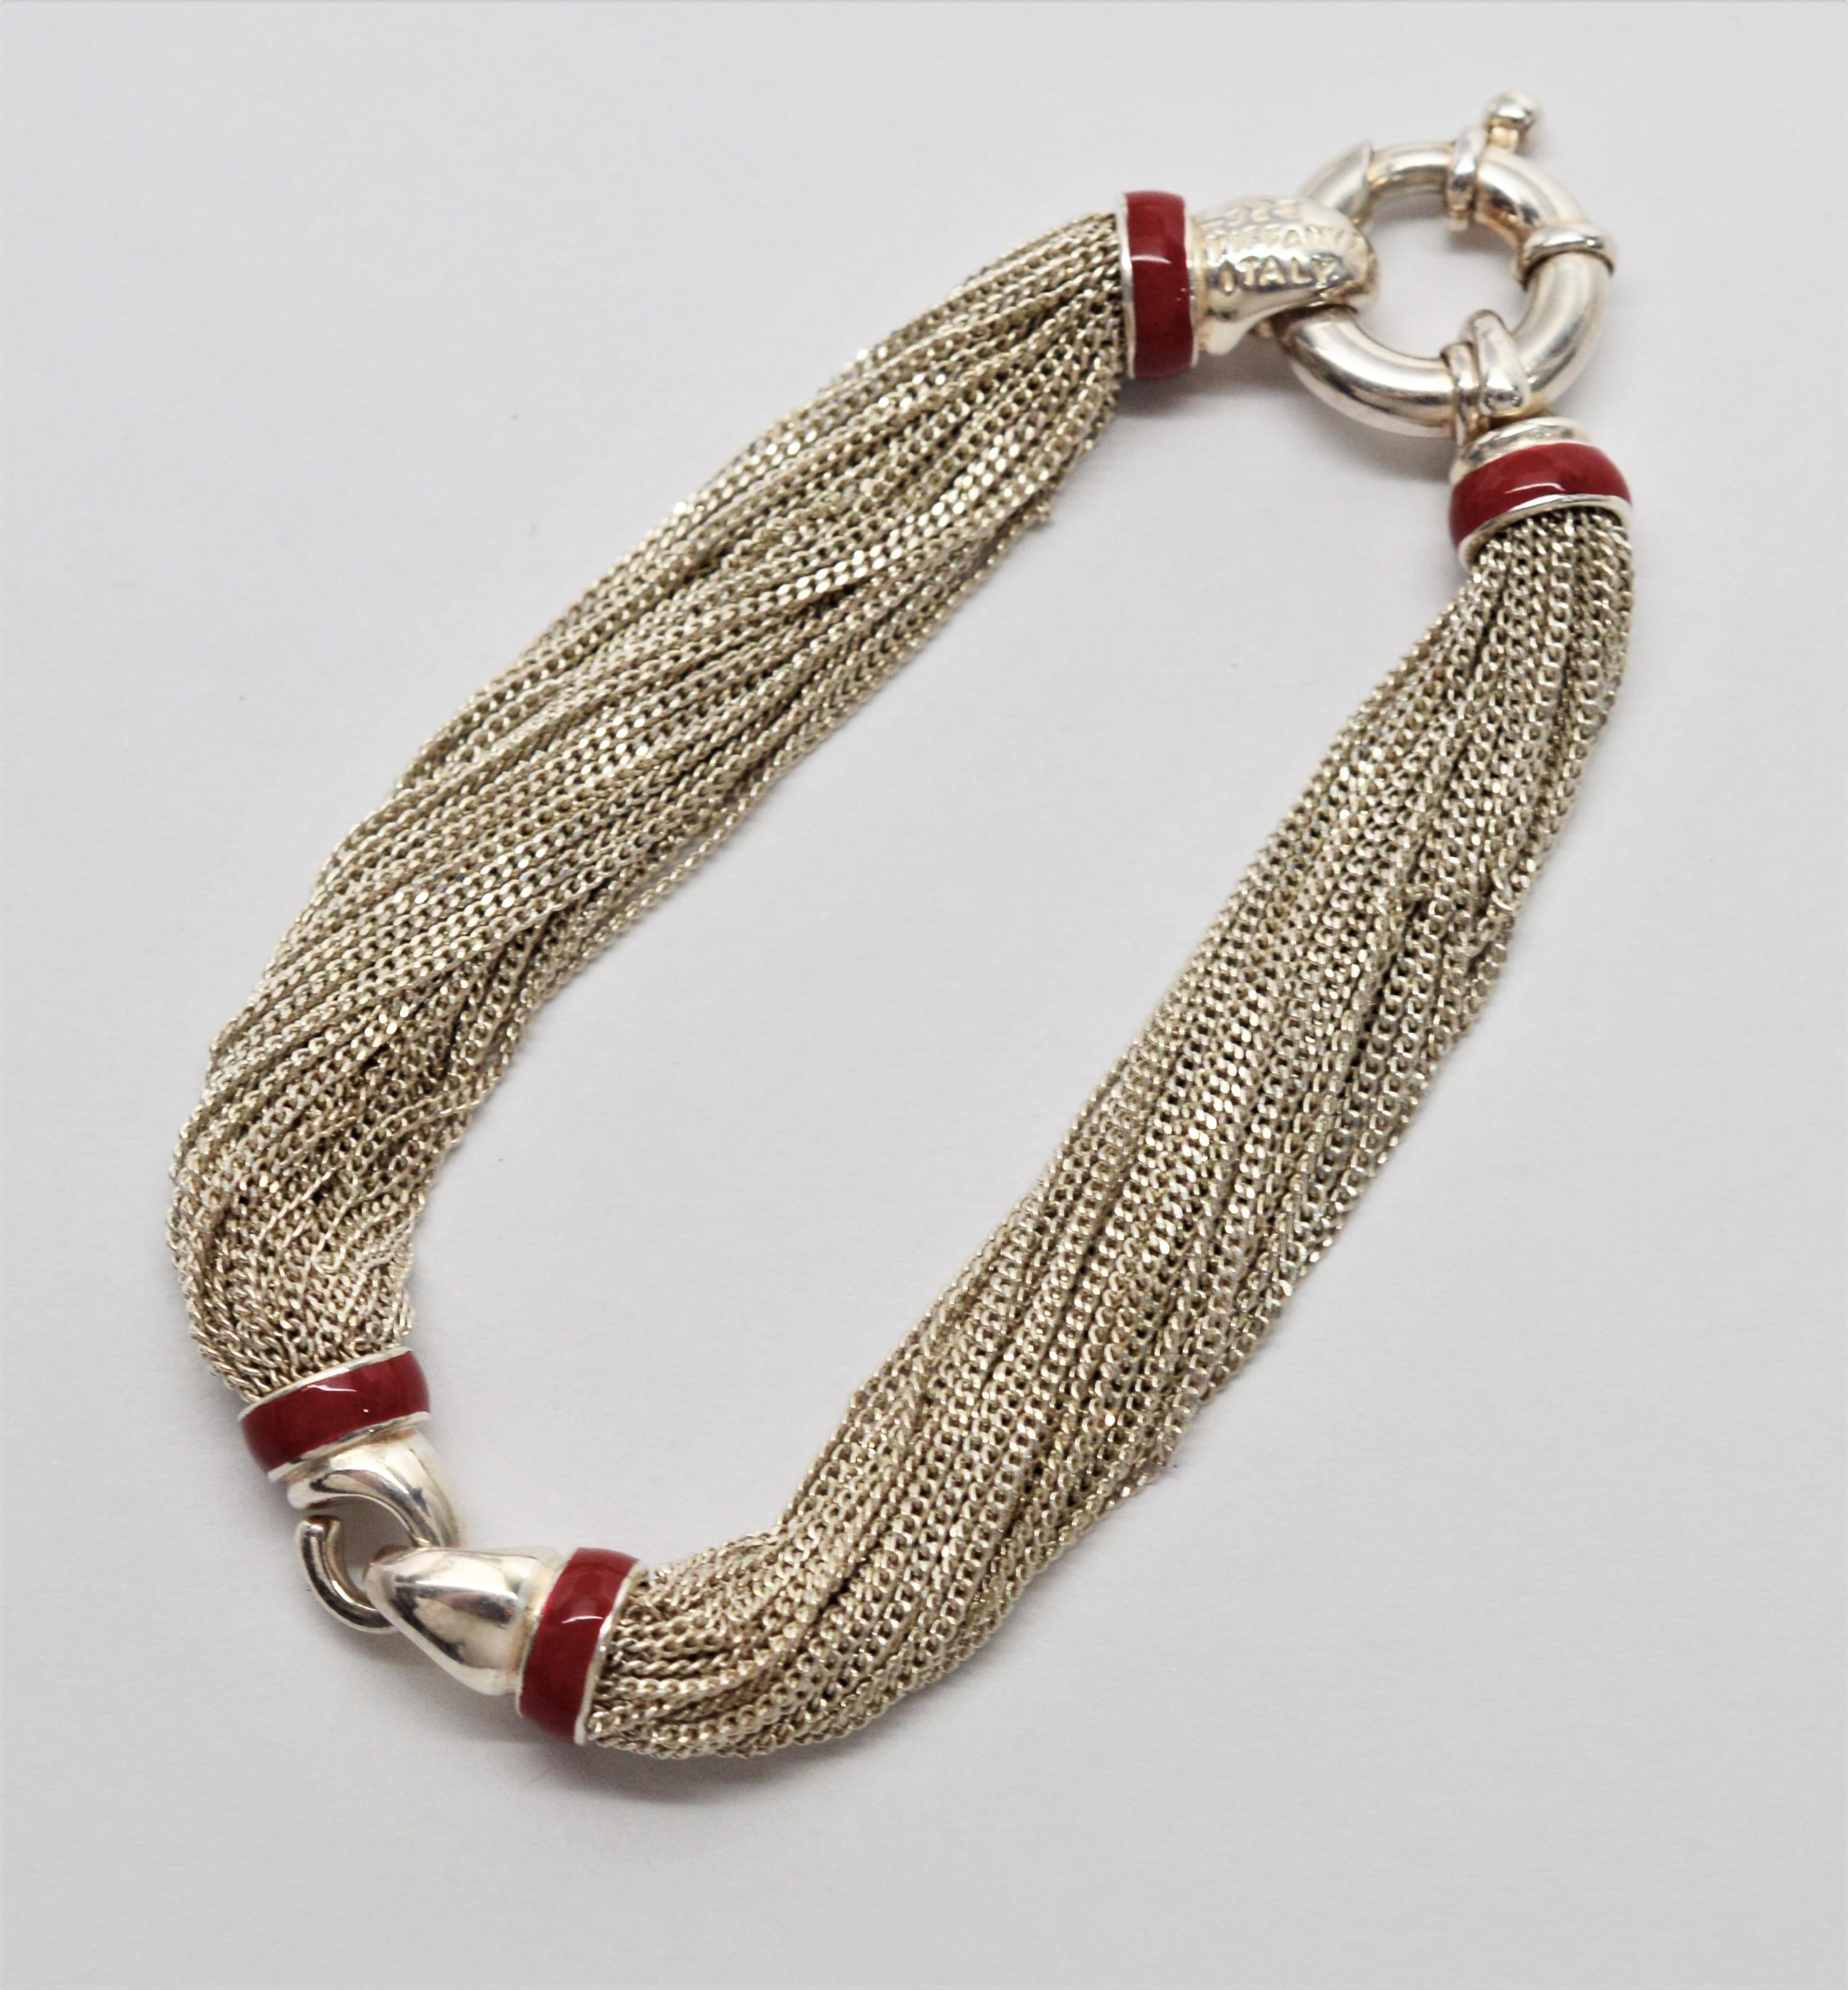 tiffany necklace and bracelet set